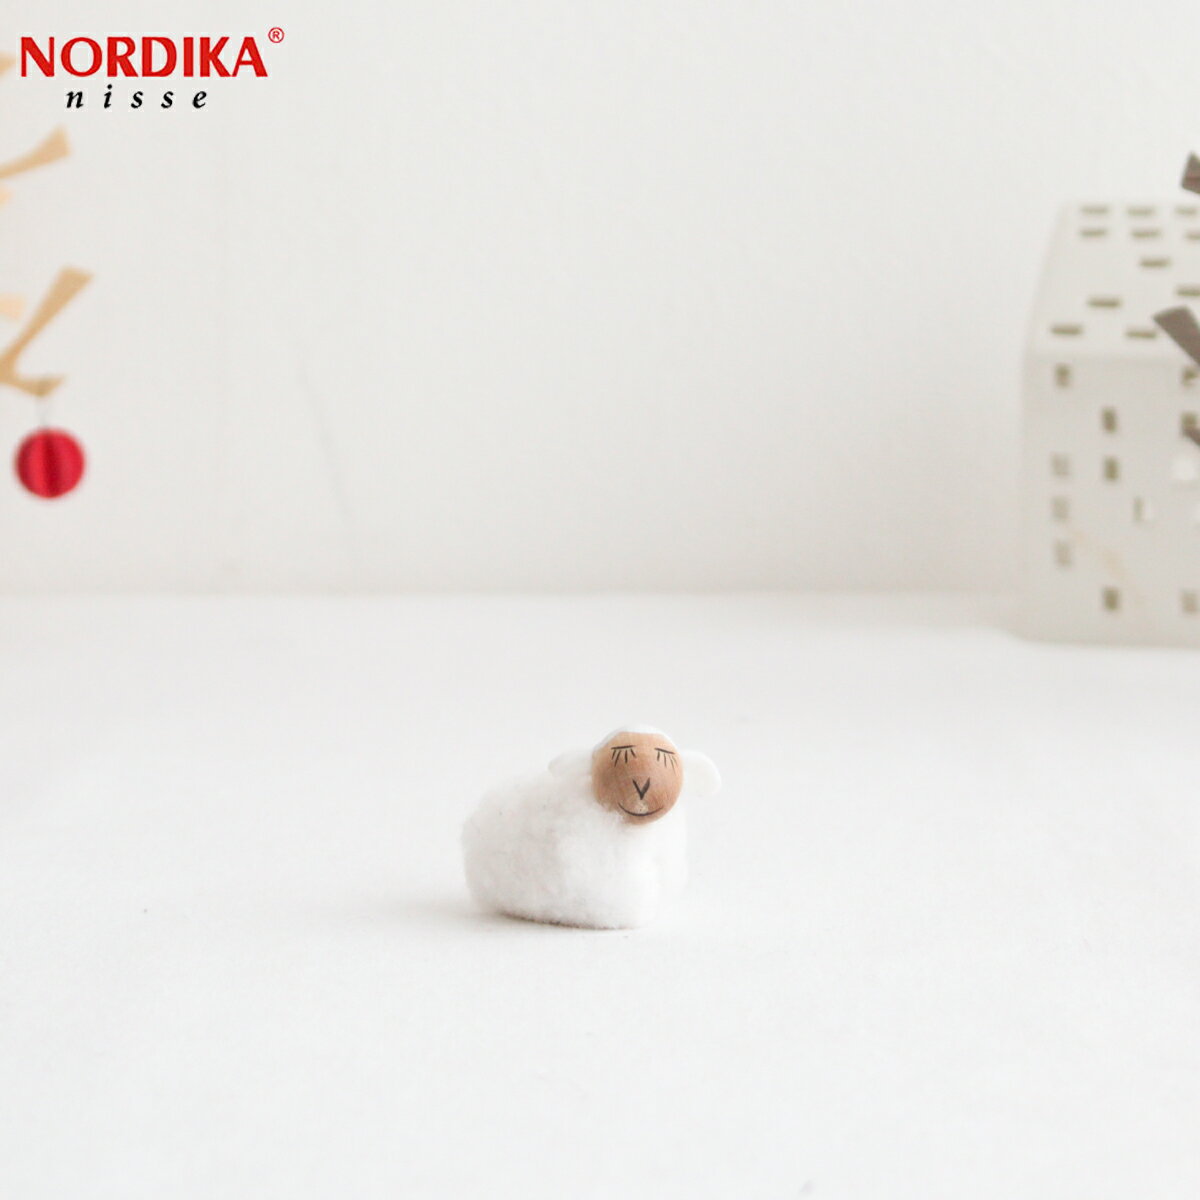 【クーポン対象 5/16 10:59まで】 ノルディカニッセ 白羊 小 NORDIKA nisse クリスマス 雑貨 木製 人形 北欧 NRD120047